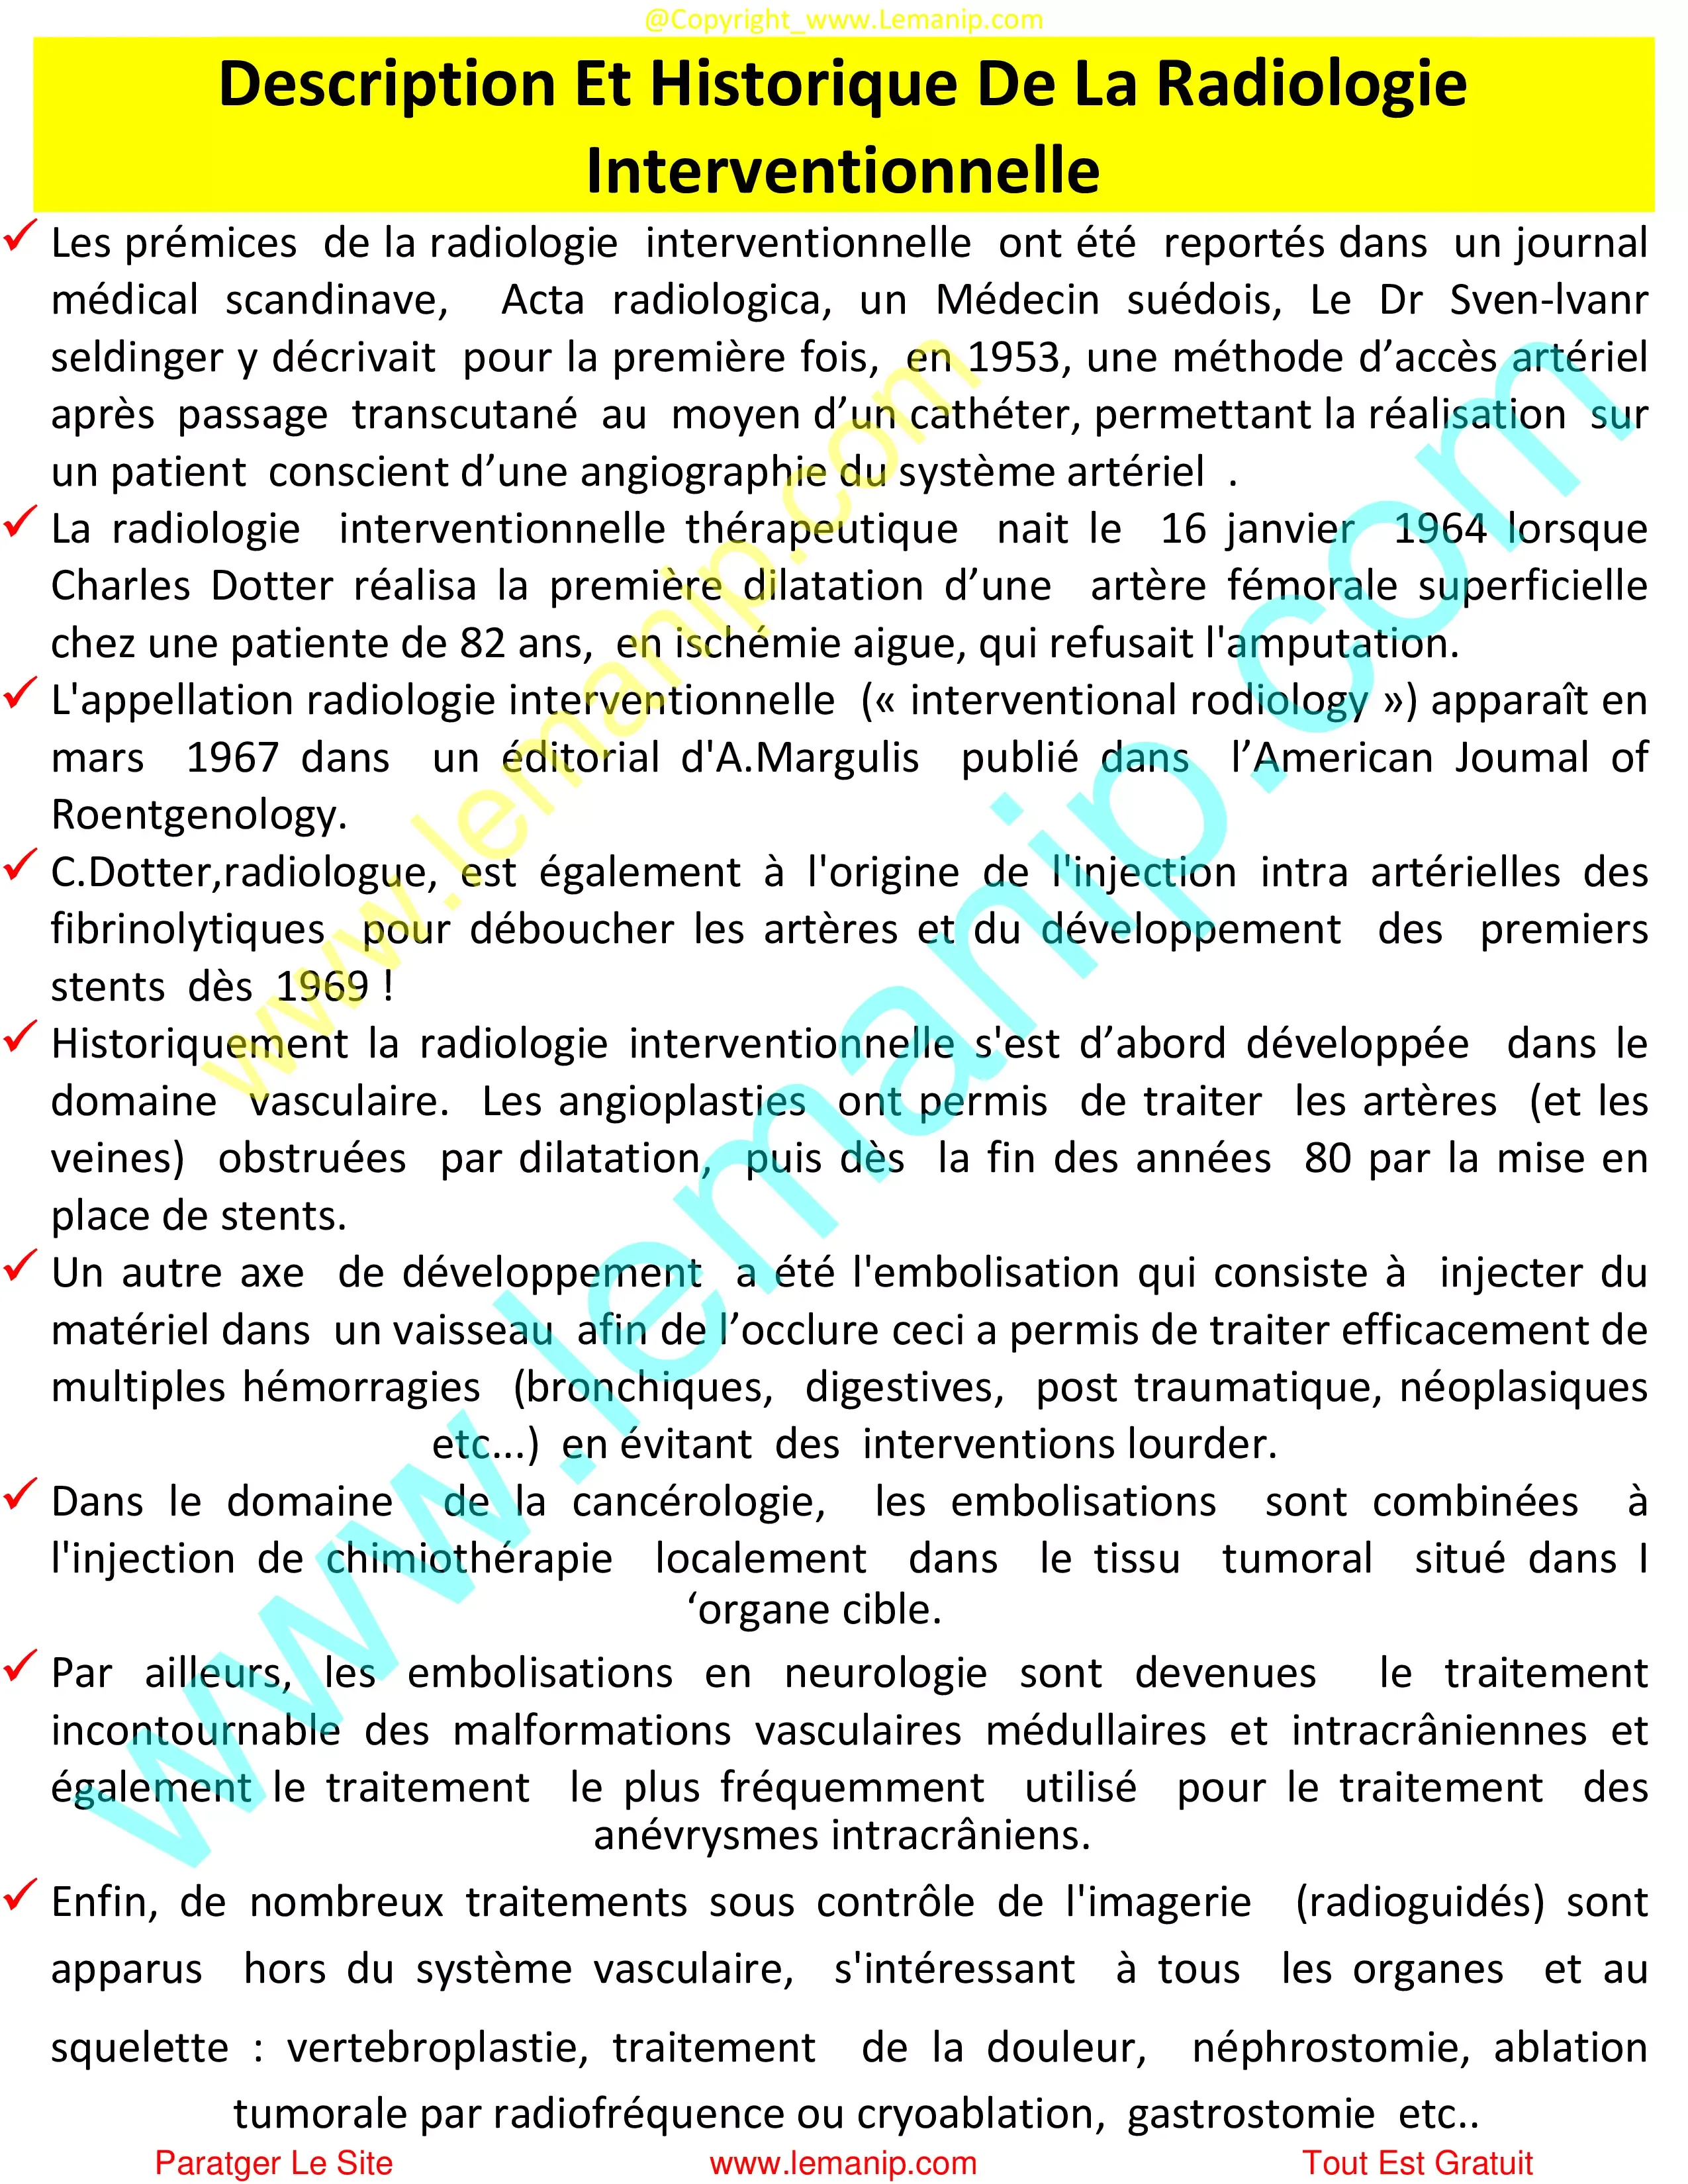 Description Et Historique De La Radiologie Interventionnelle